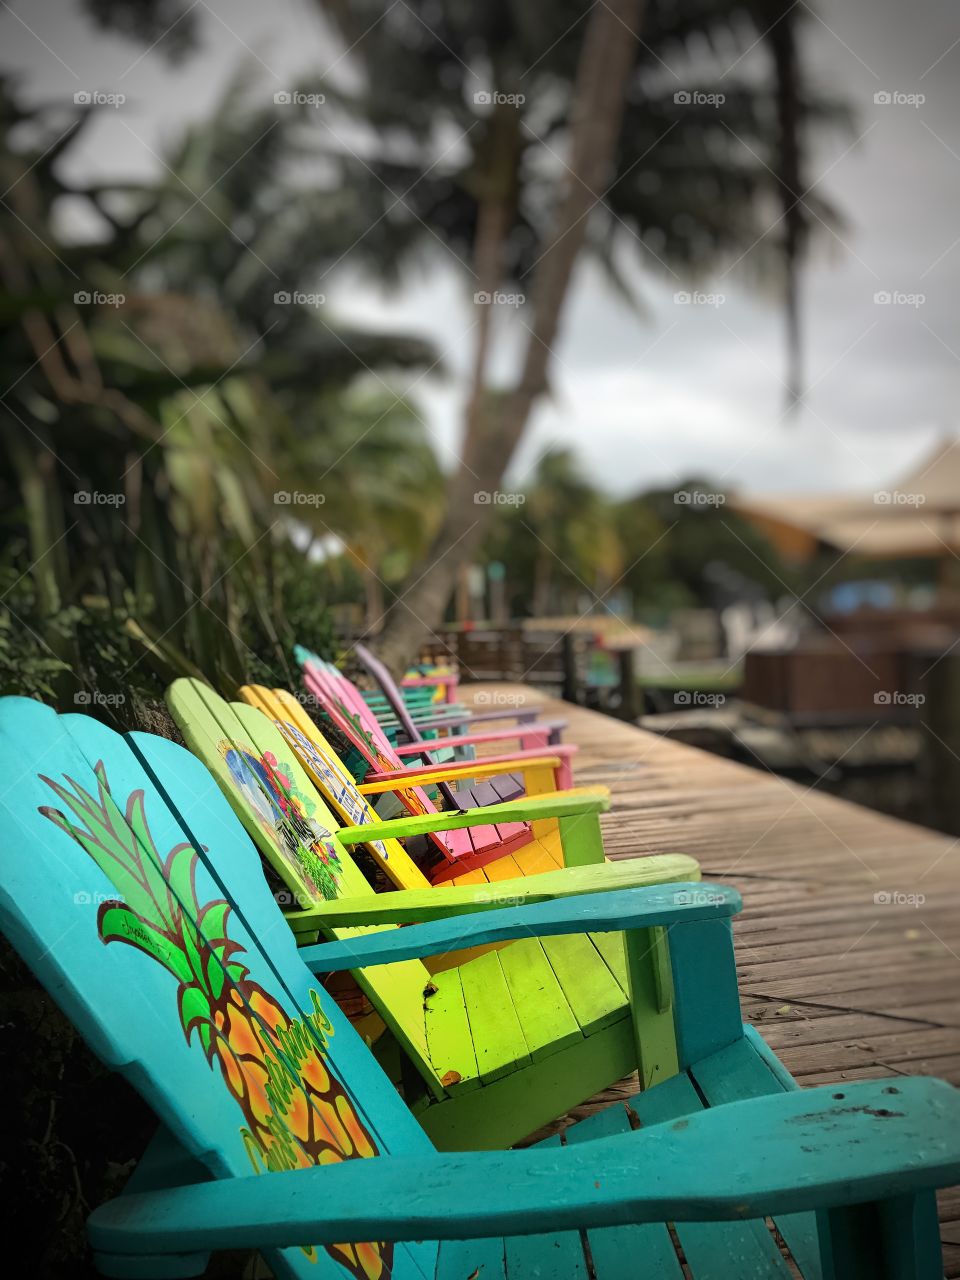 Beach Chairs at Guanabanas Restaurant in Jupiter, FL